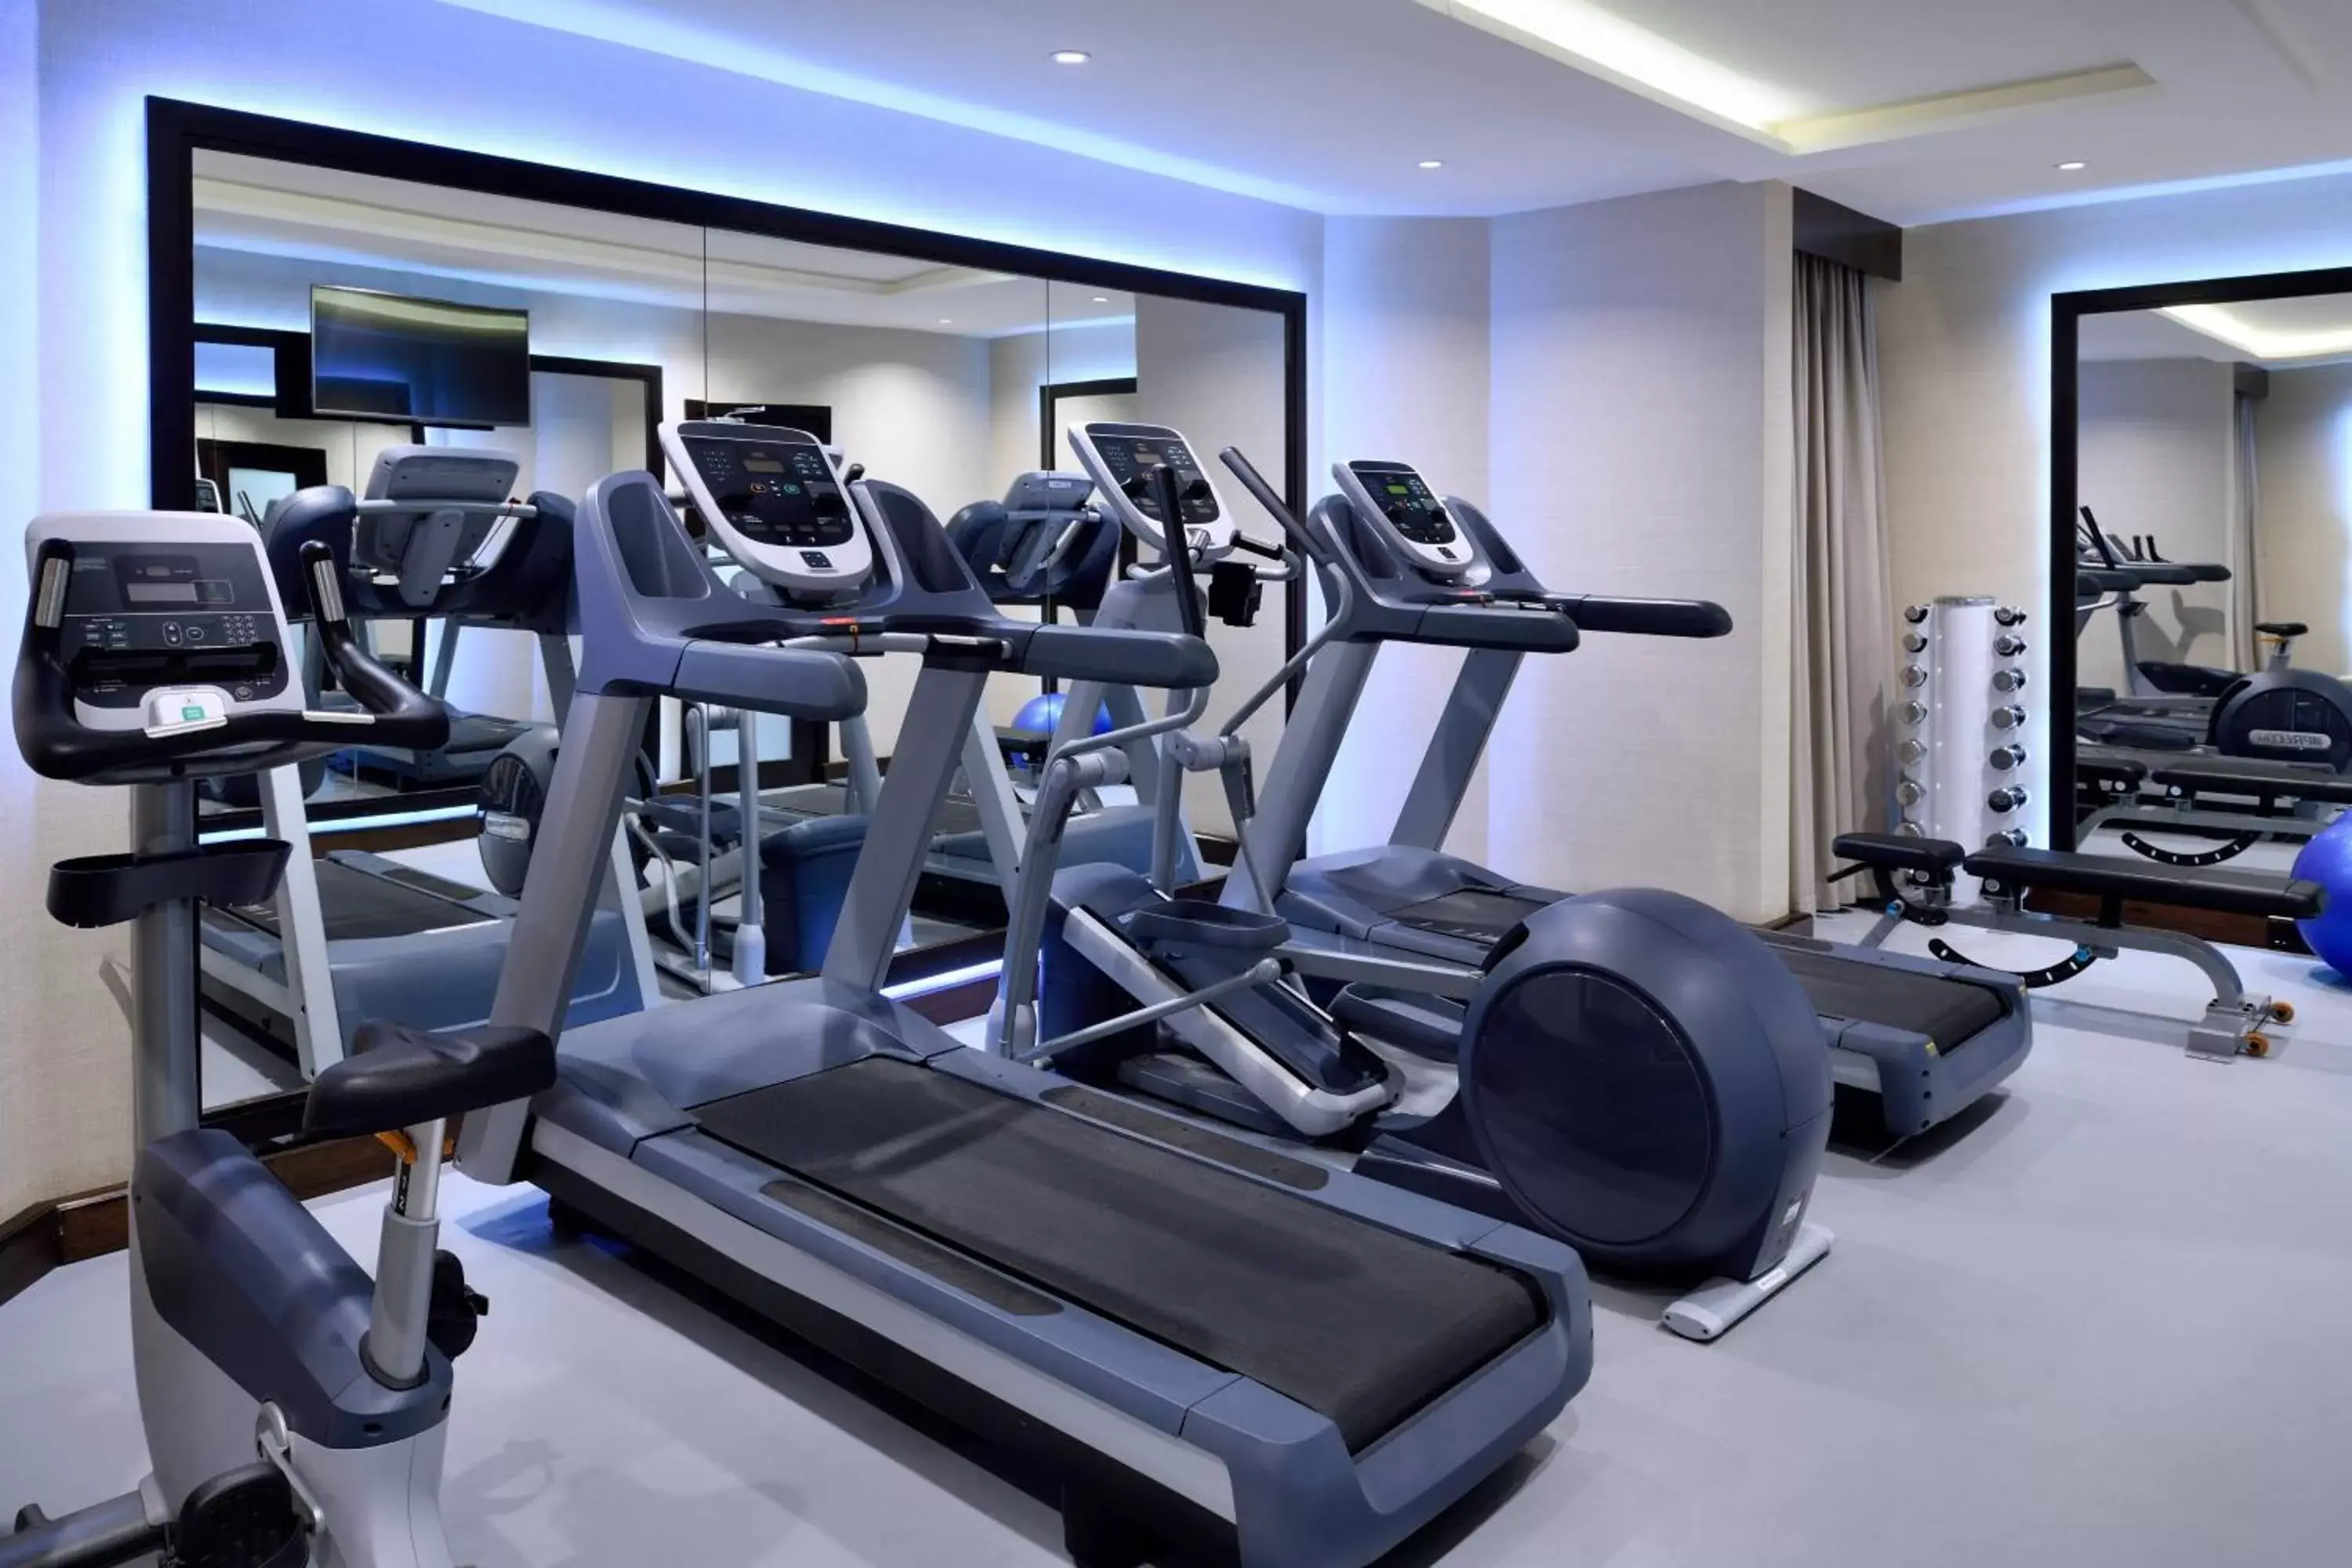 Fitness centre/facilities, Fitness Center/Facilities in Riyadh Marriott Hotel